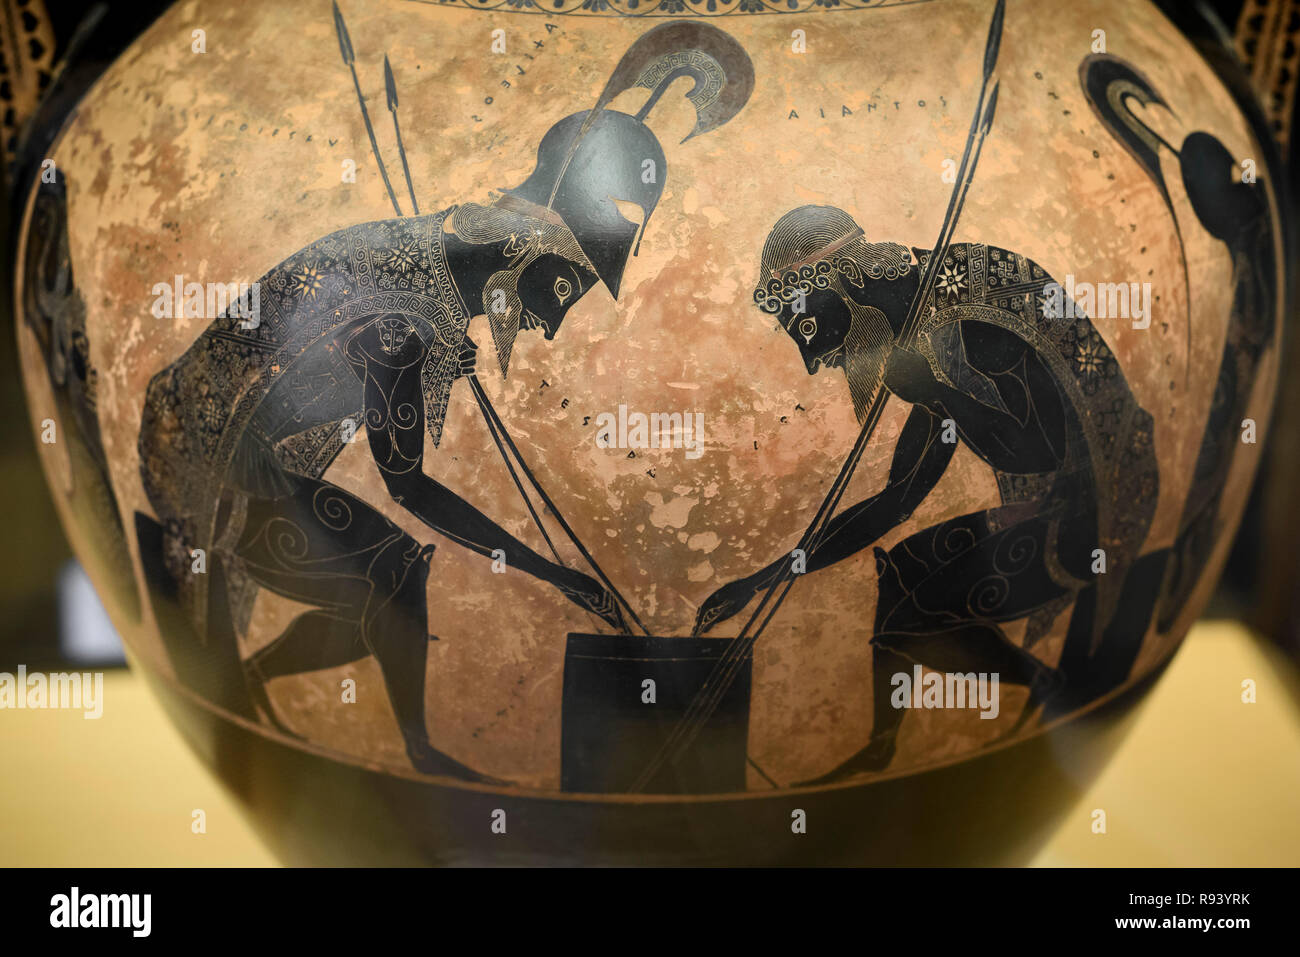 Rom. Italien. Achilles (links) und Ajax zu würfeln. Dachgeschoss schwarz - Abbildung Amphora unterzeichnet von Exekias, 540-530 BC. Vatikan Museum (Musei Vaticani) Stockfoto